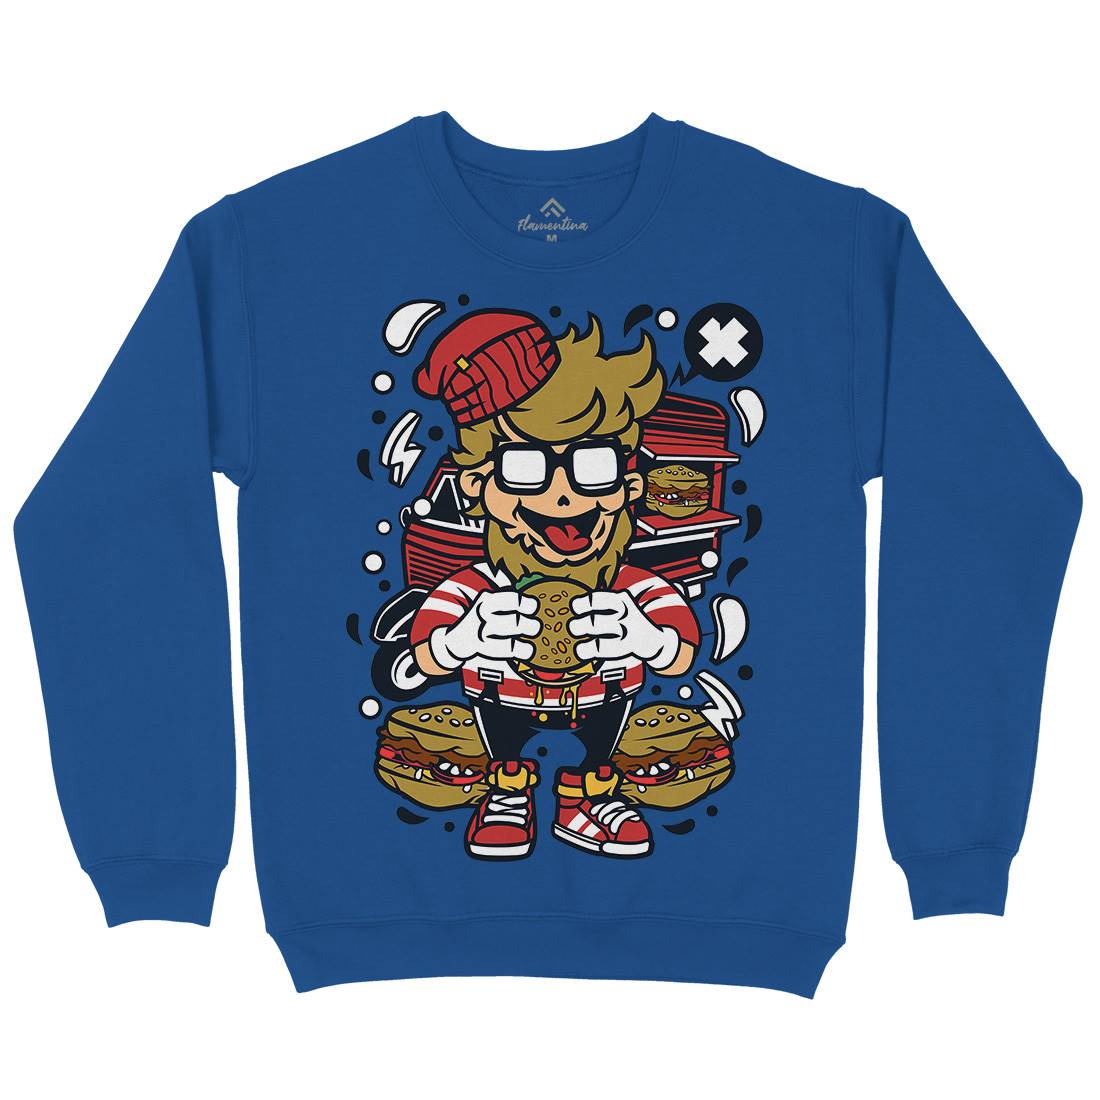 Hipster Burger Kids Crew Neck Sweatshirt Barber C135